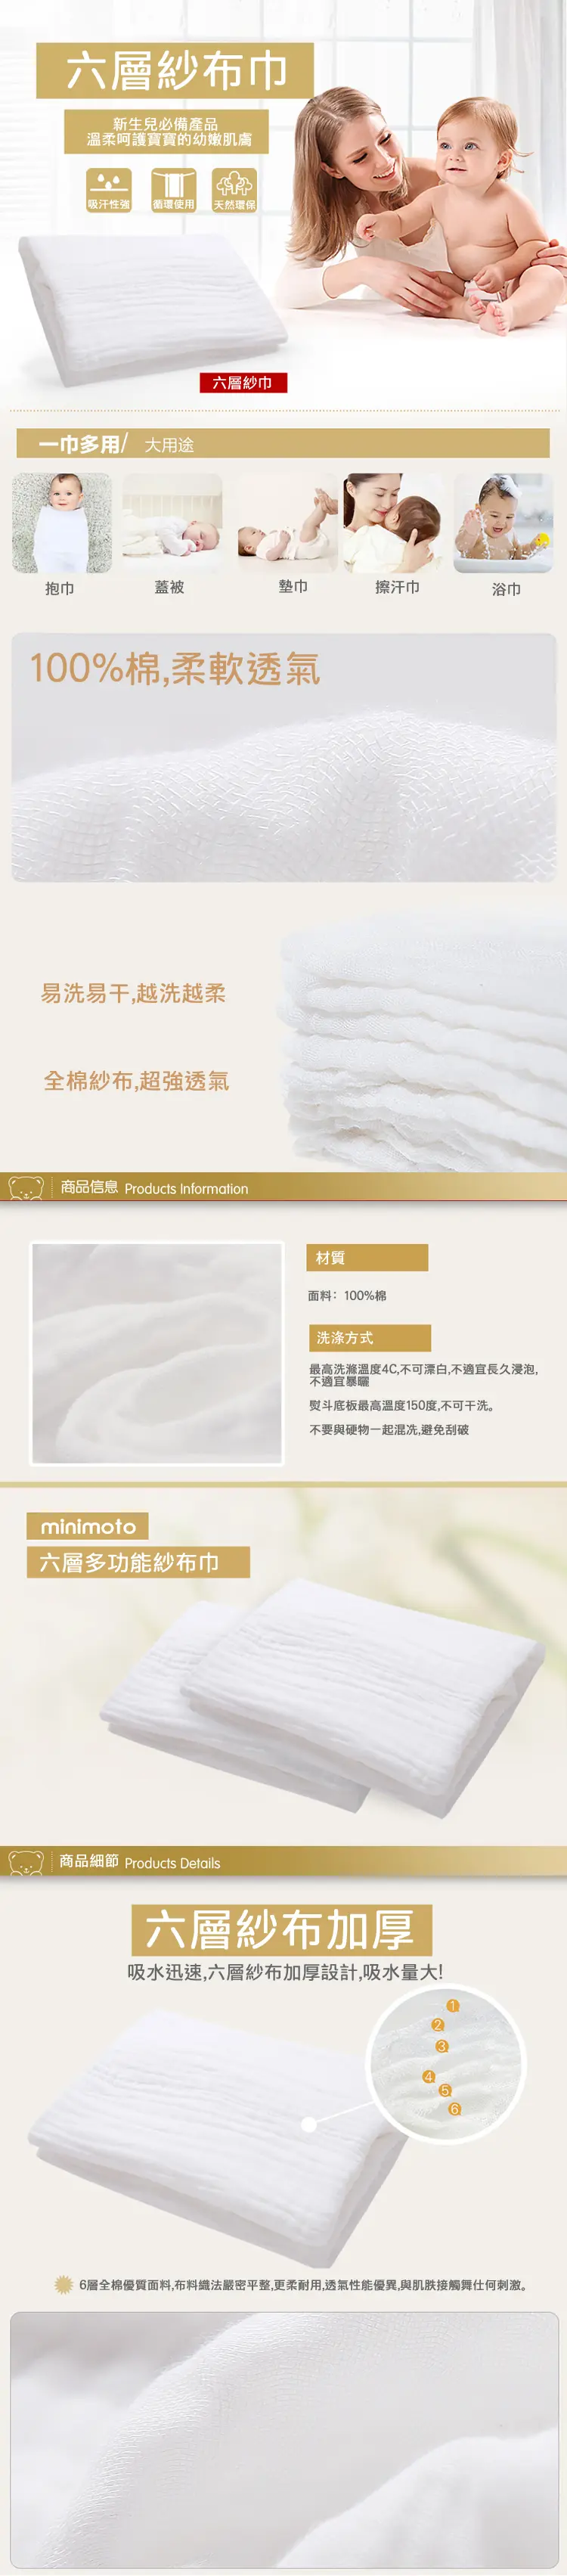 Minimoto 六層多功能泡泡紗布巾-100 X 80cm